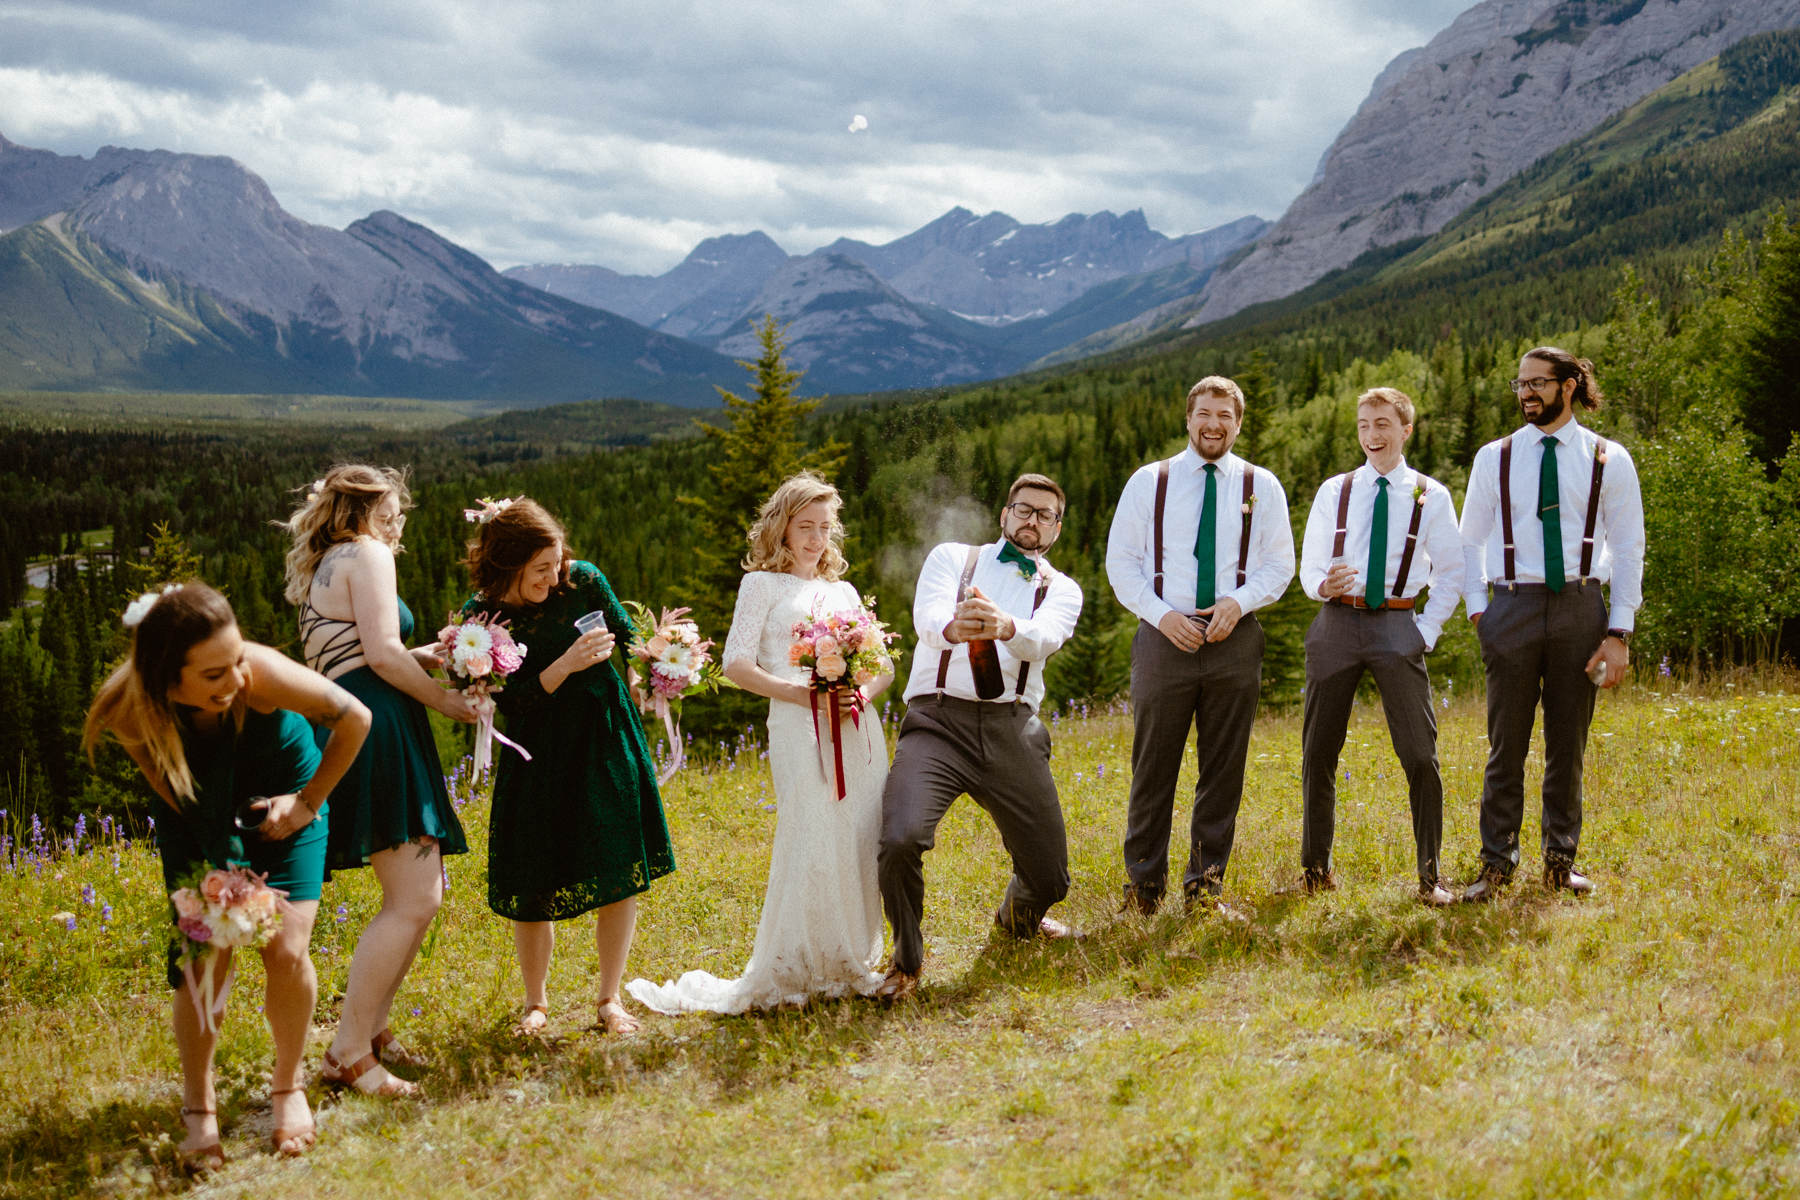 Kananaskis Wedding Photography at Pomeroy Mountain Lodge - Image  41